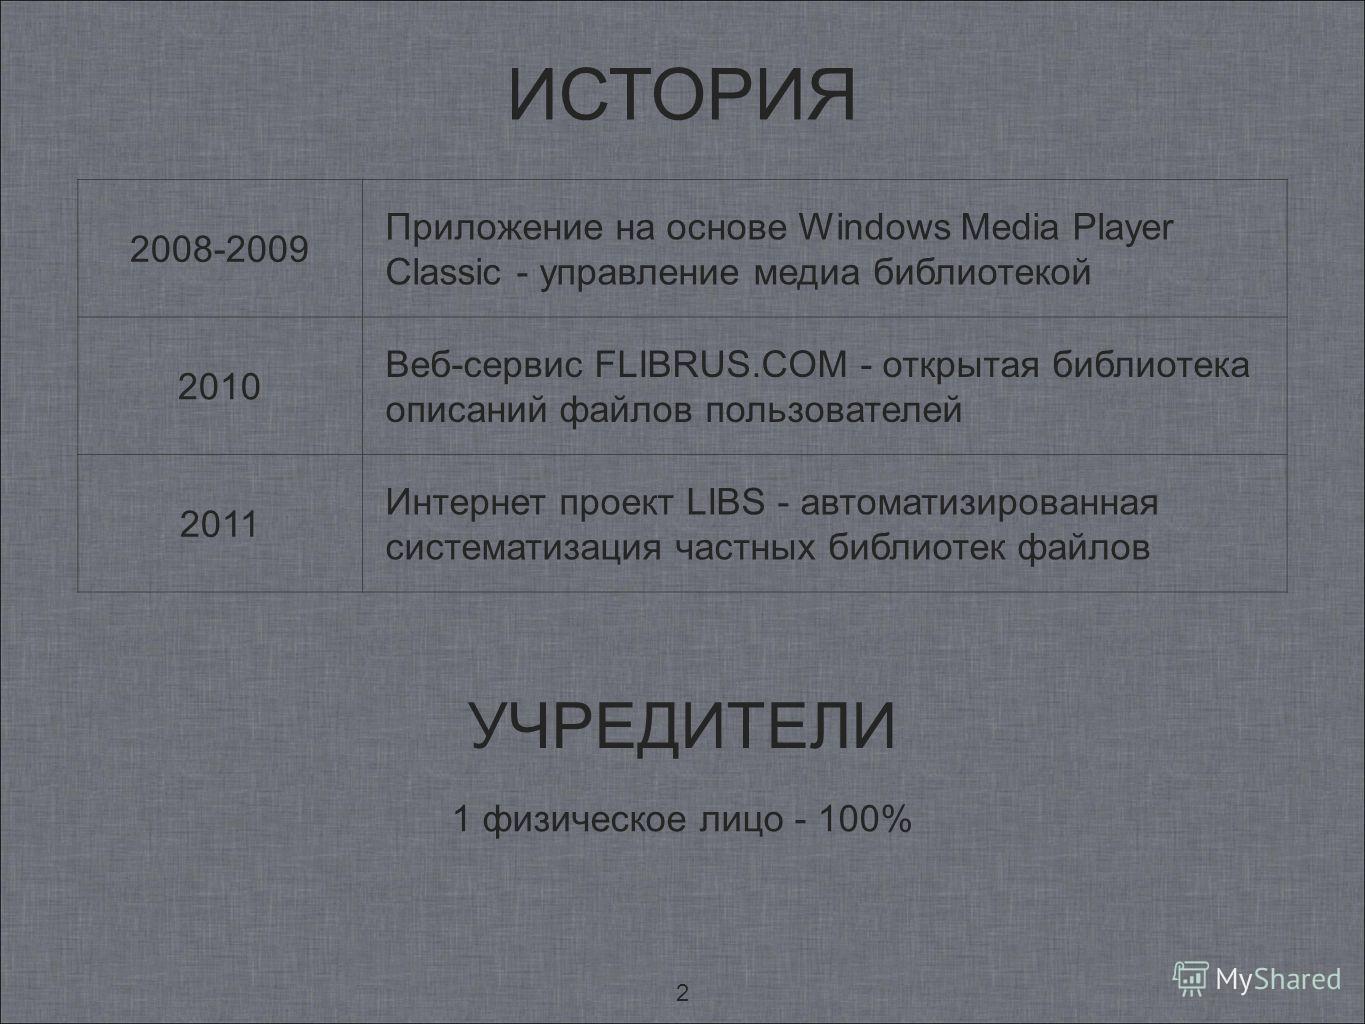 2 ИСТОРИЯ УЧРЕДИТЕЛИ 1 физическое лицо - 100% 2008-2009 Приложение на основе Windows Media Player Classic - управление медиа библиотекой 2010 Веб-сервис FLIBRUS.COM - открытая библиотека описаний файлов пользователей 2011 Интернет проект LIBS - автом